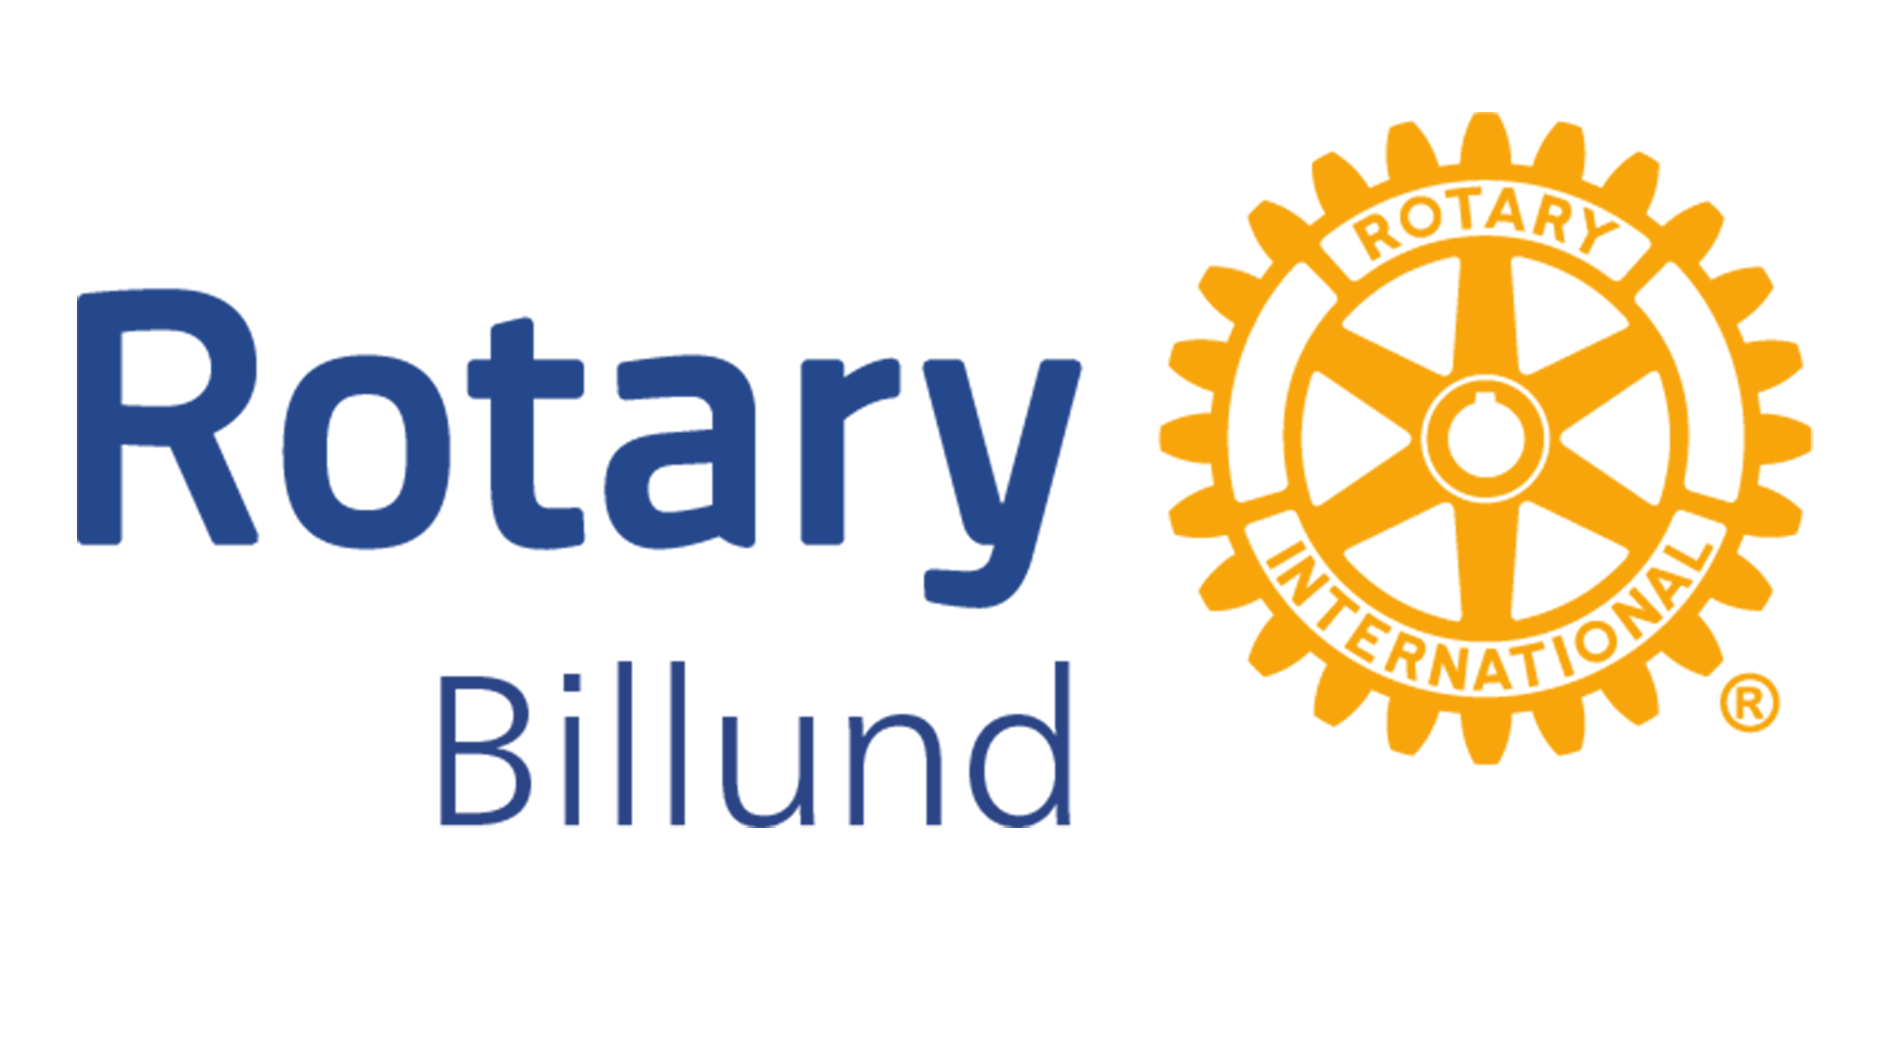 billund rotary klub logo